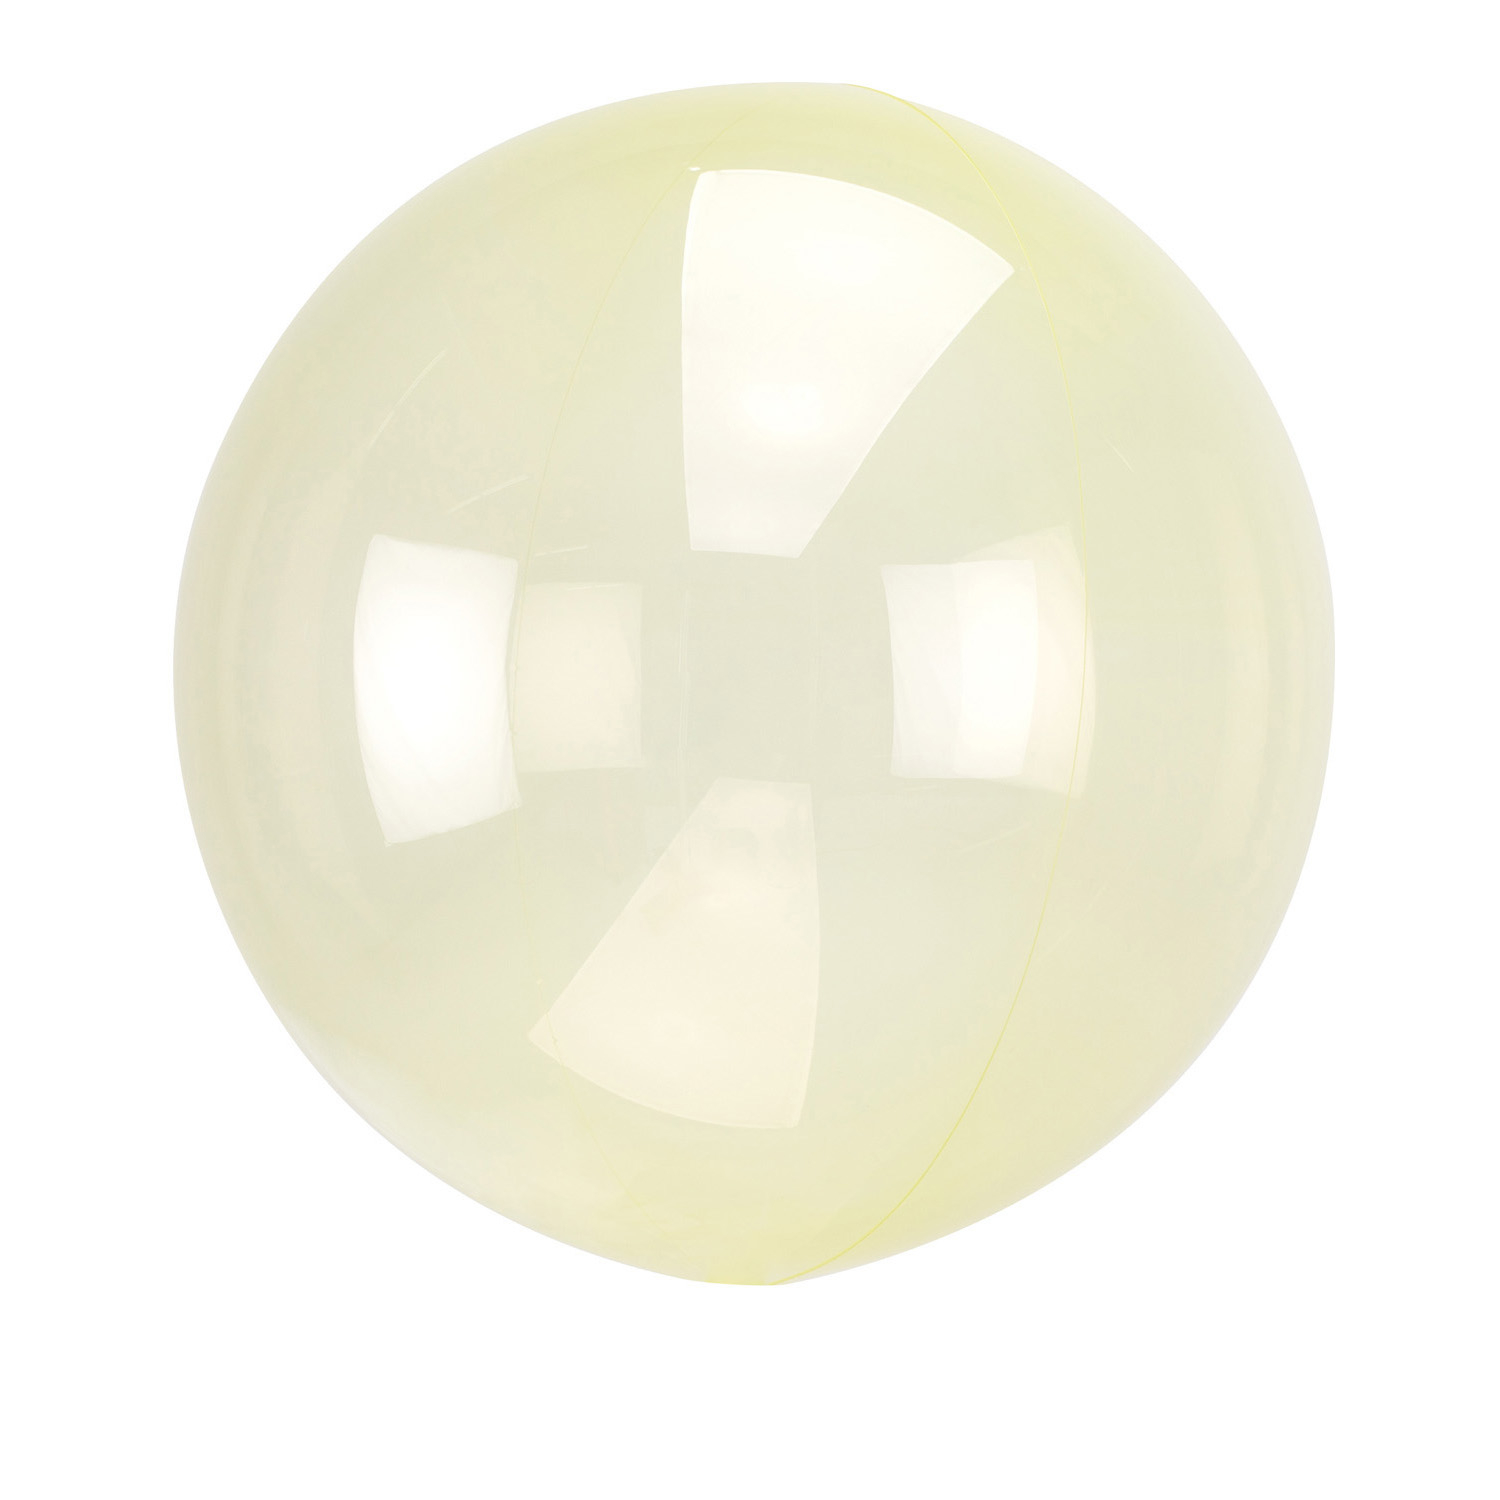 Průhledný balón žlutý 45 cm